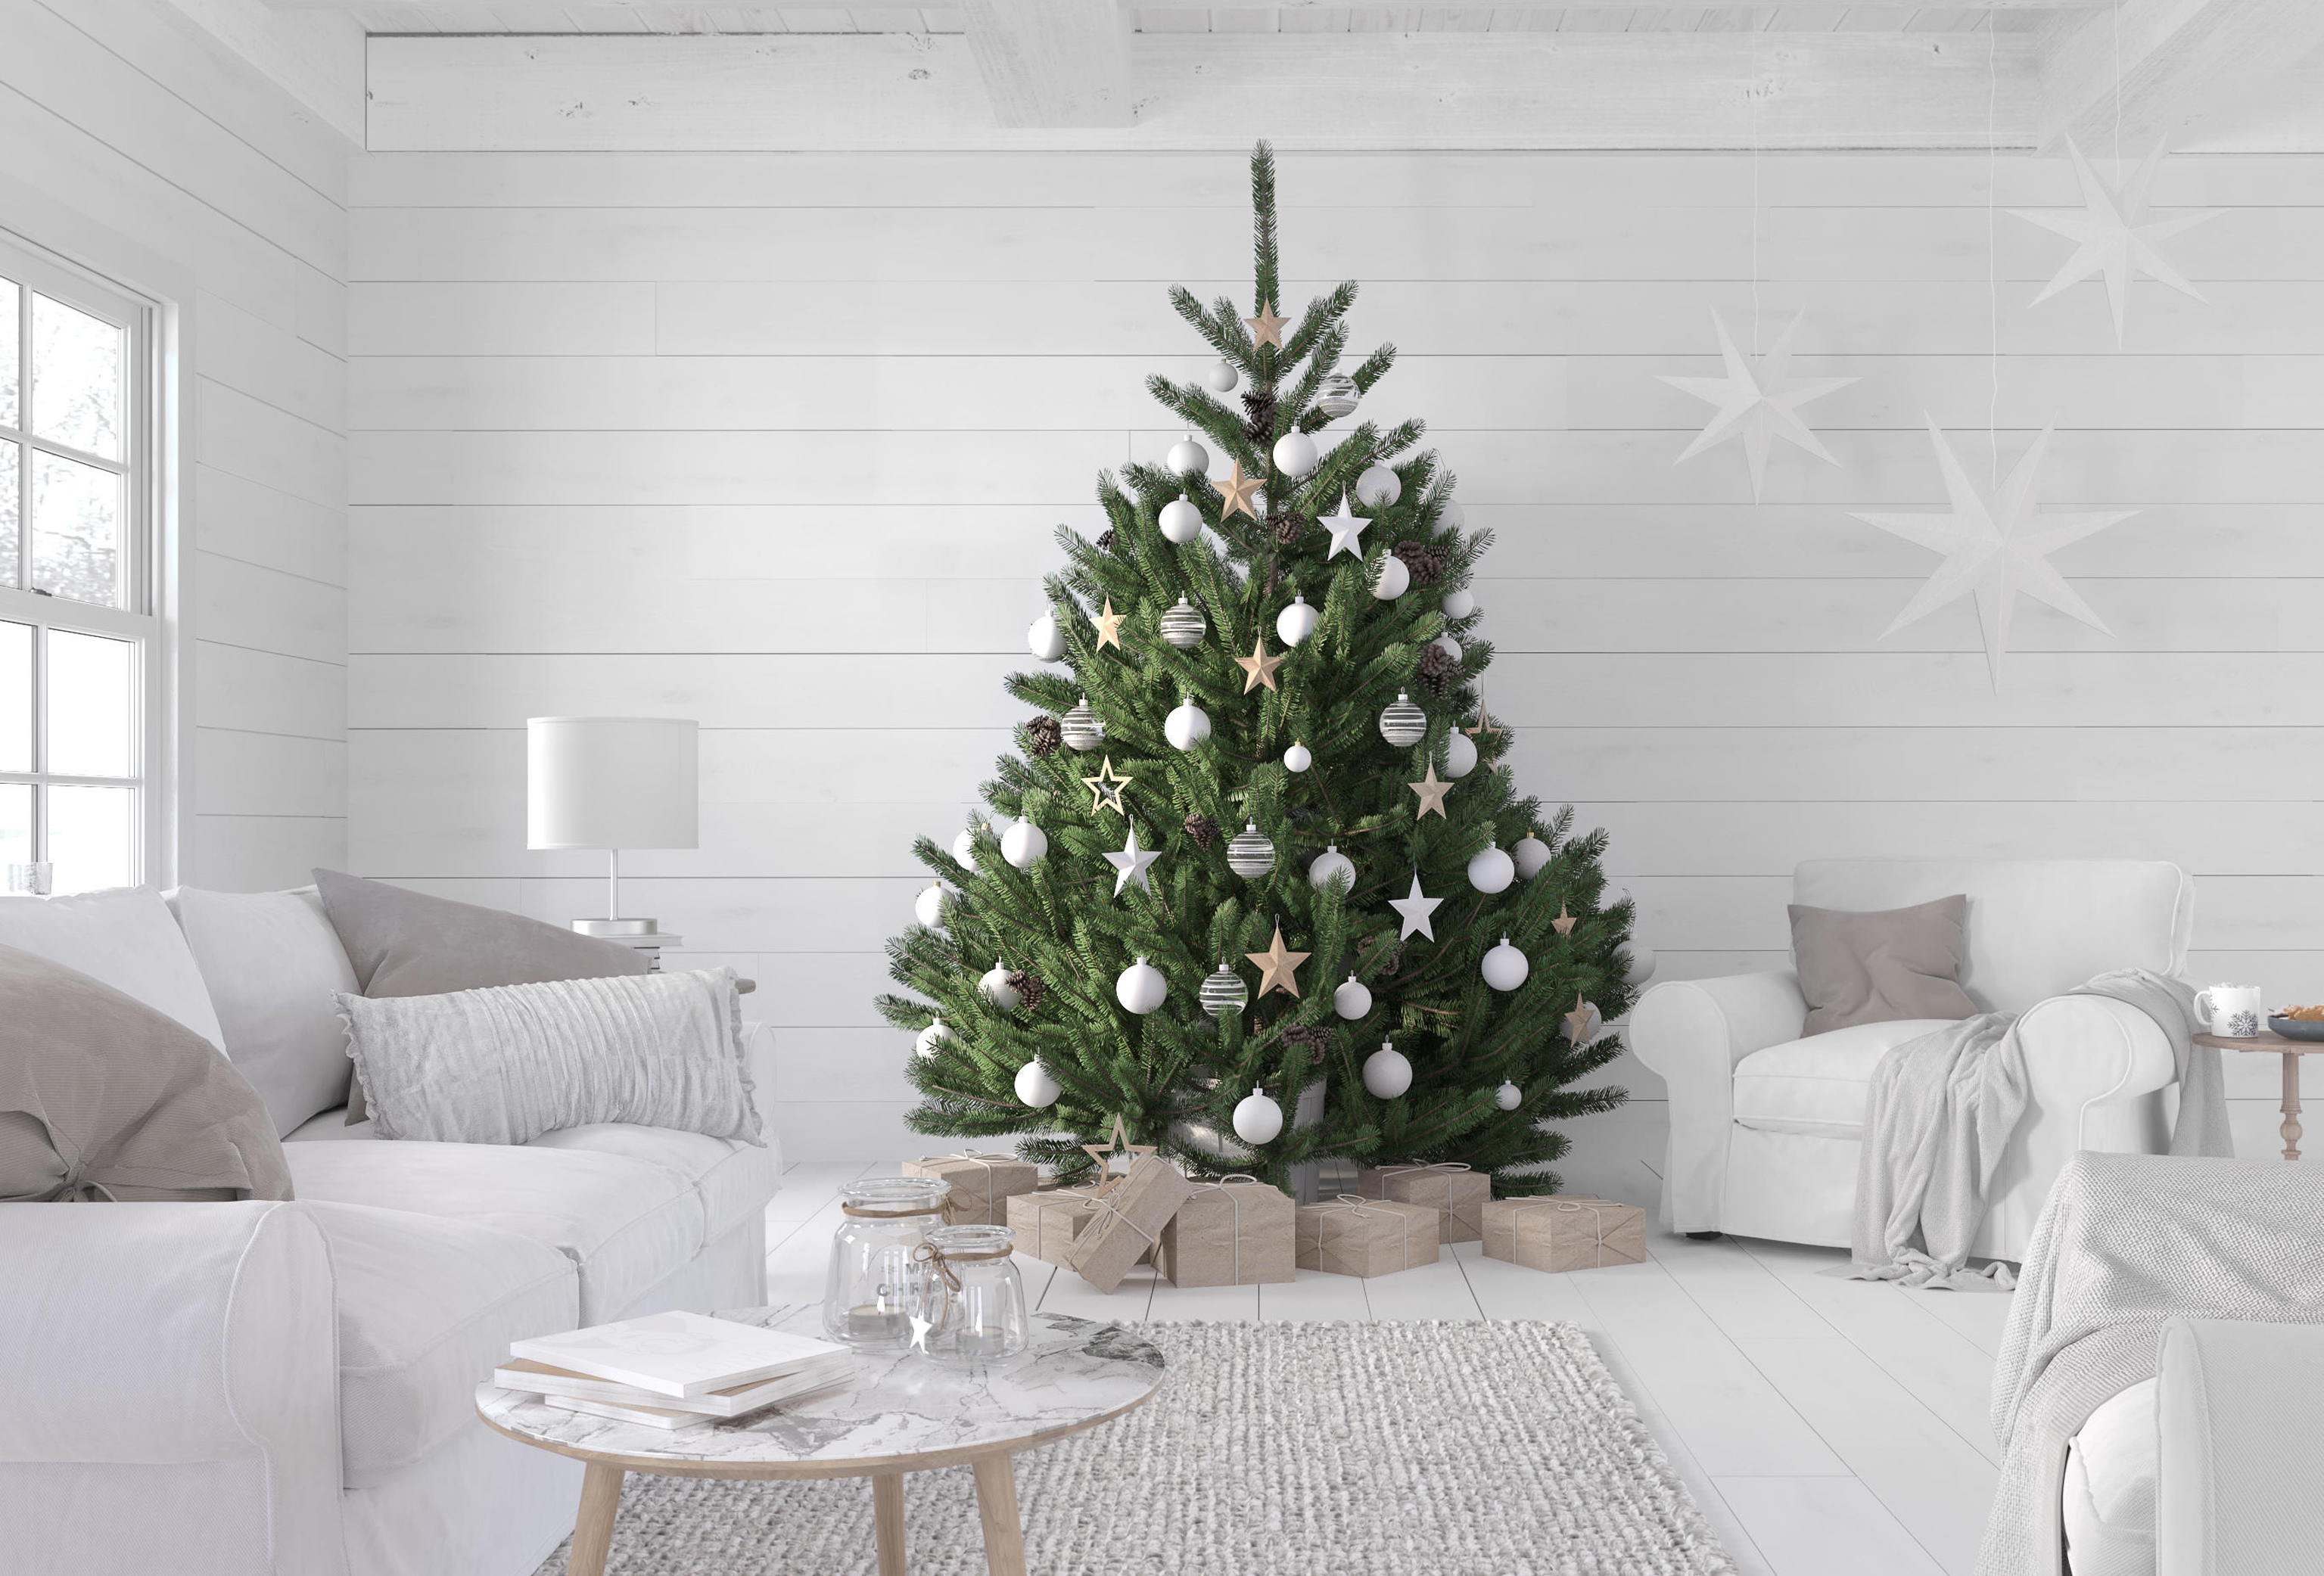 A Scandi-style Christmas tree